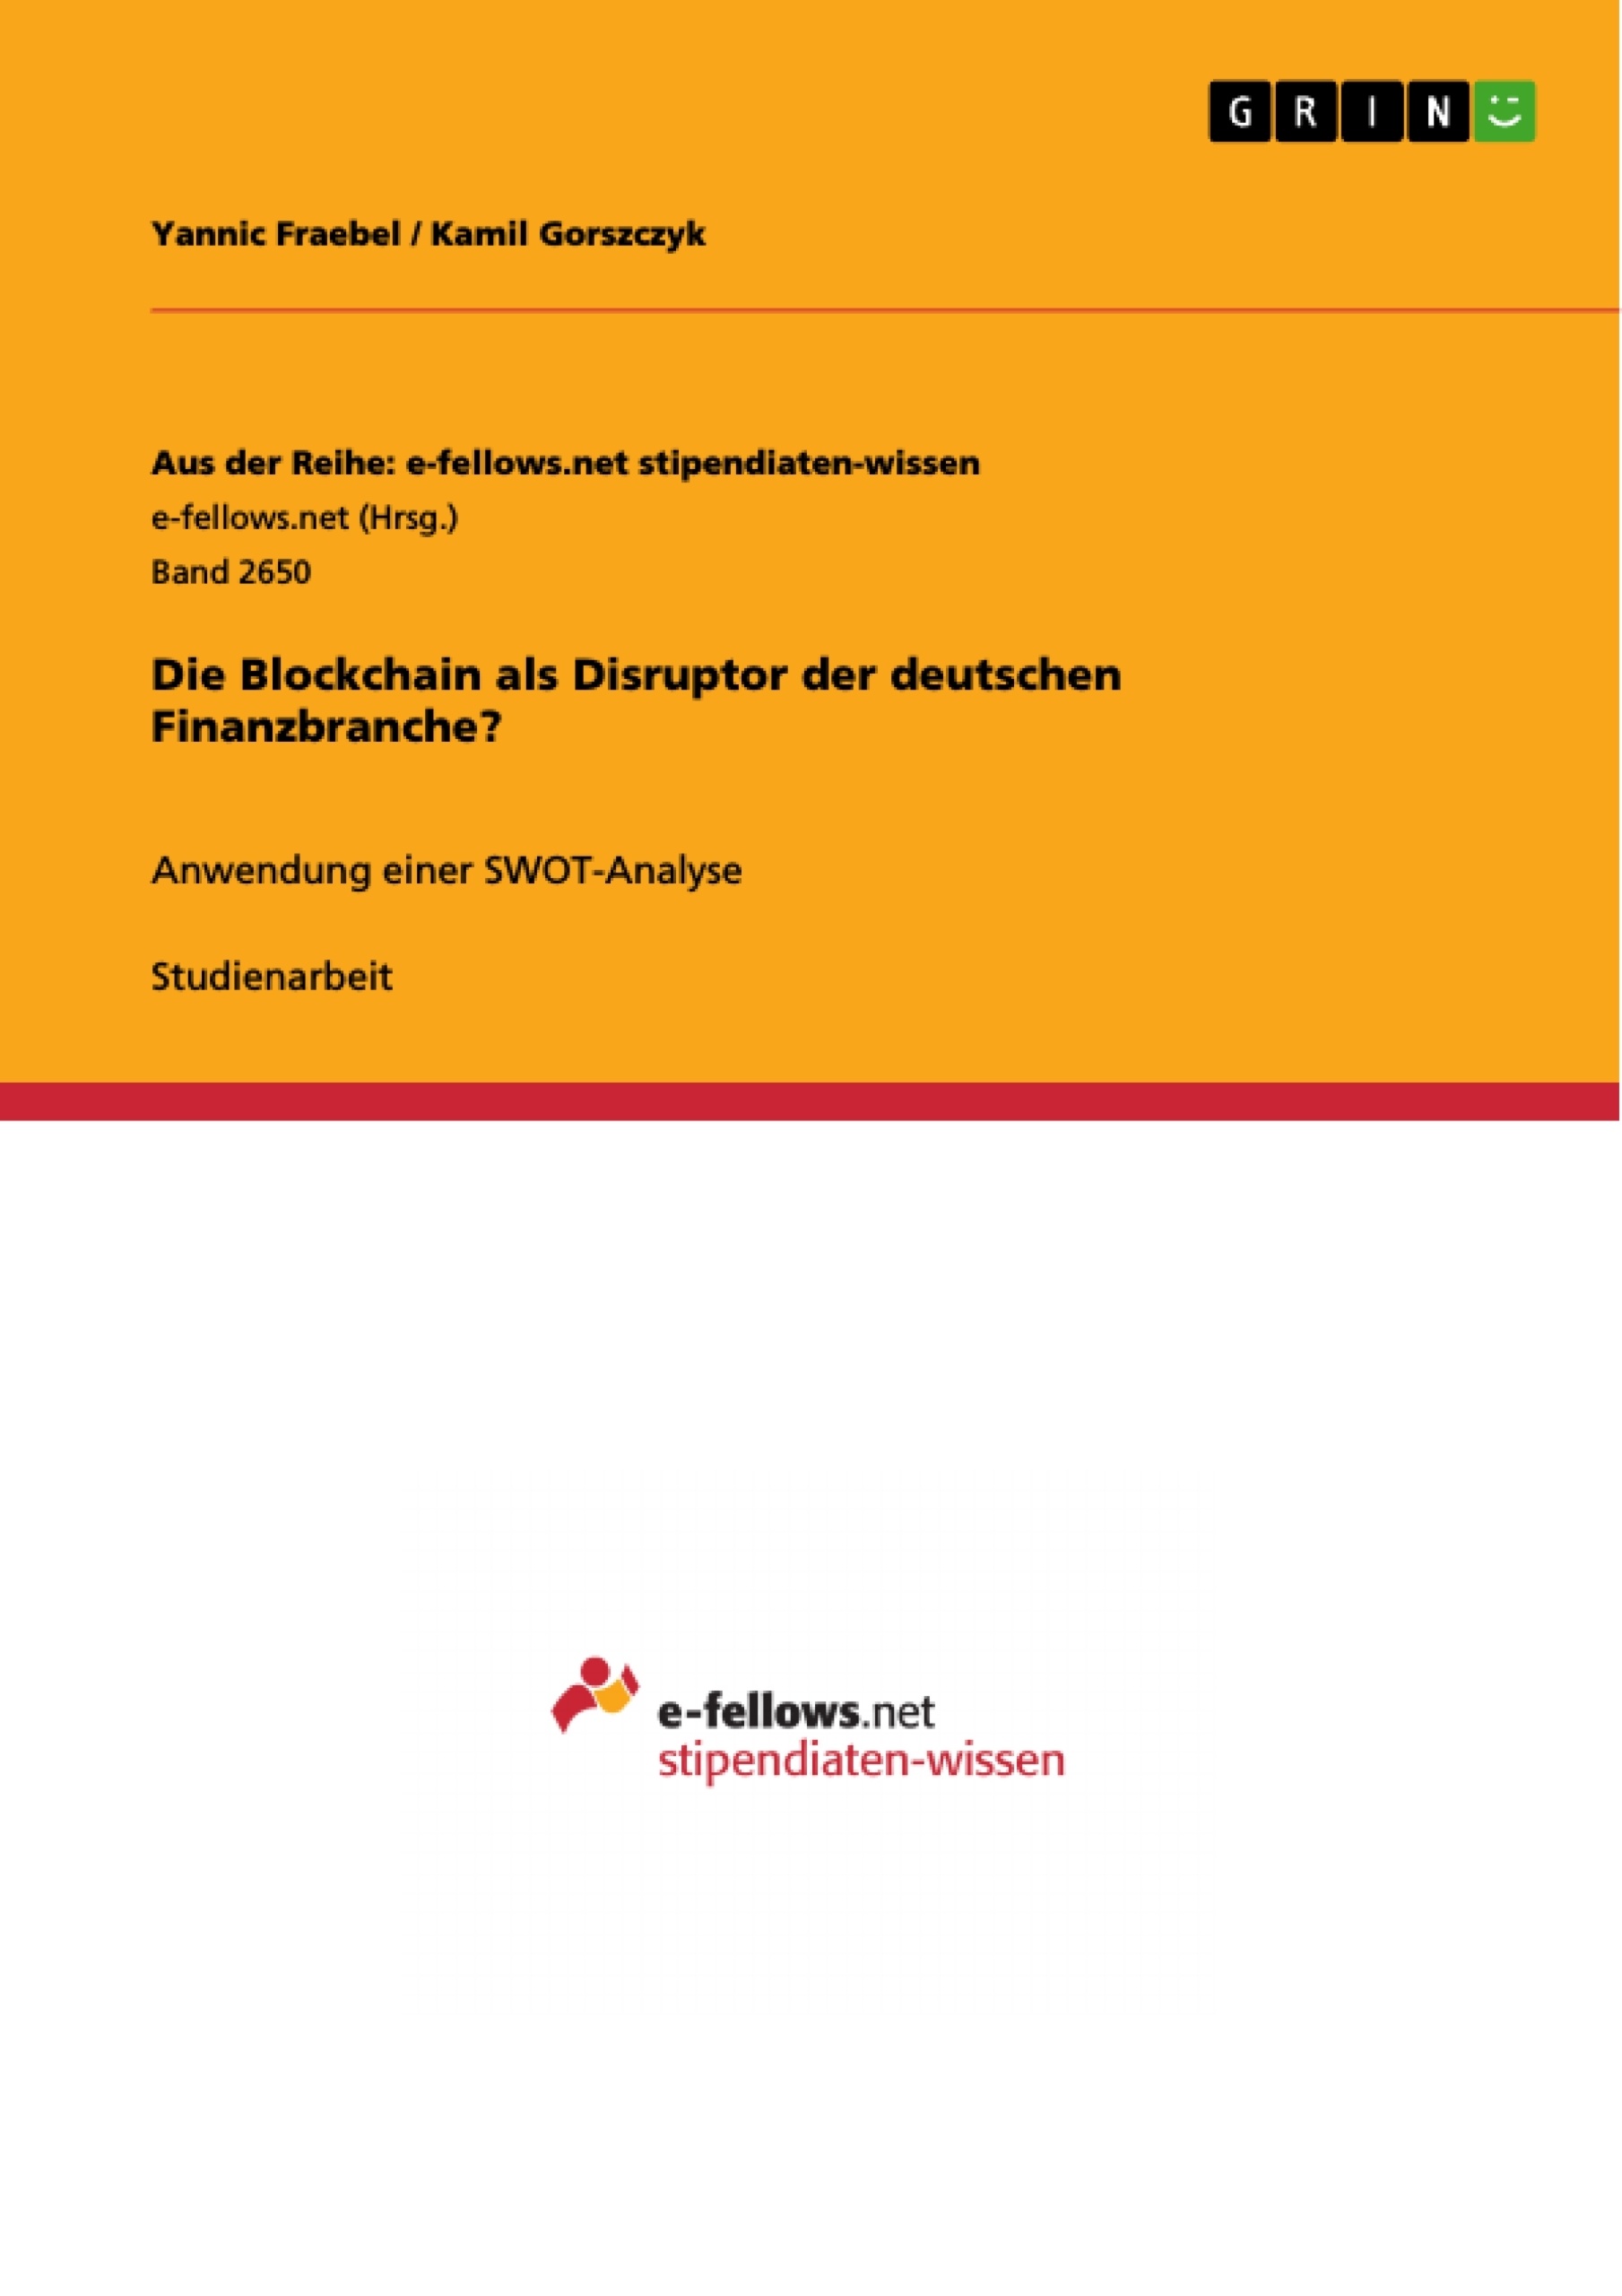 Titre: Die Blockchain als Disruptor der deutschen Finanzbranche?